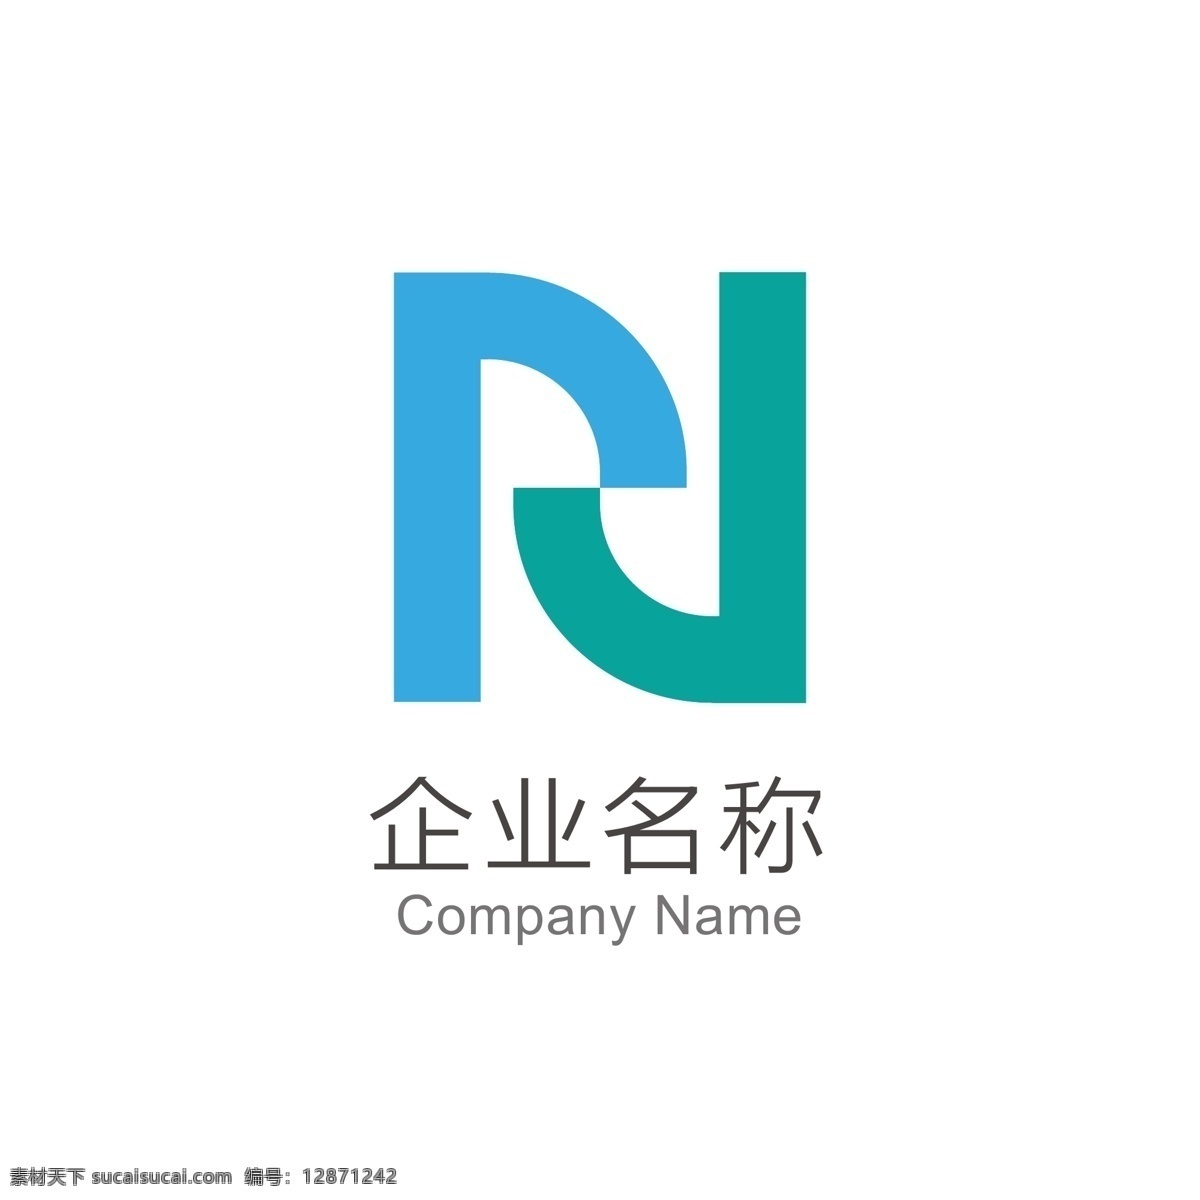 logo n 字母 多彩 三角 三角形 矢量 科技 英文字母 企业标识 logo设计 标识 图标 公司logo 公司图标 企业图标